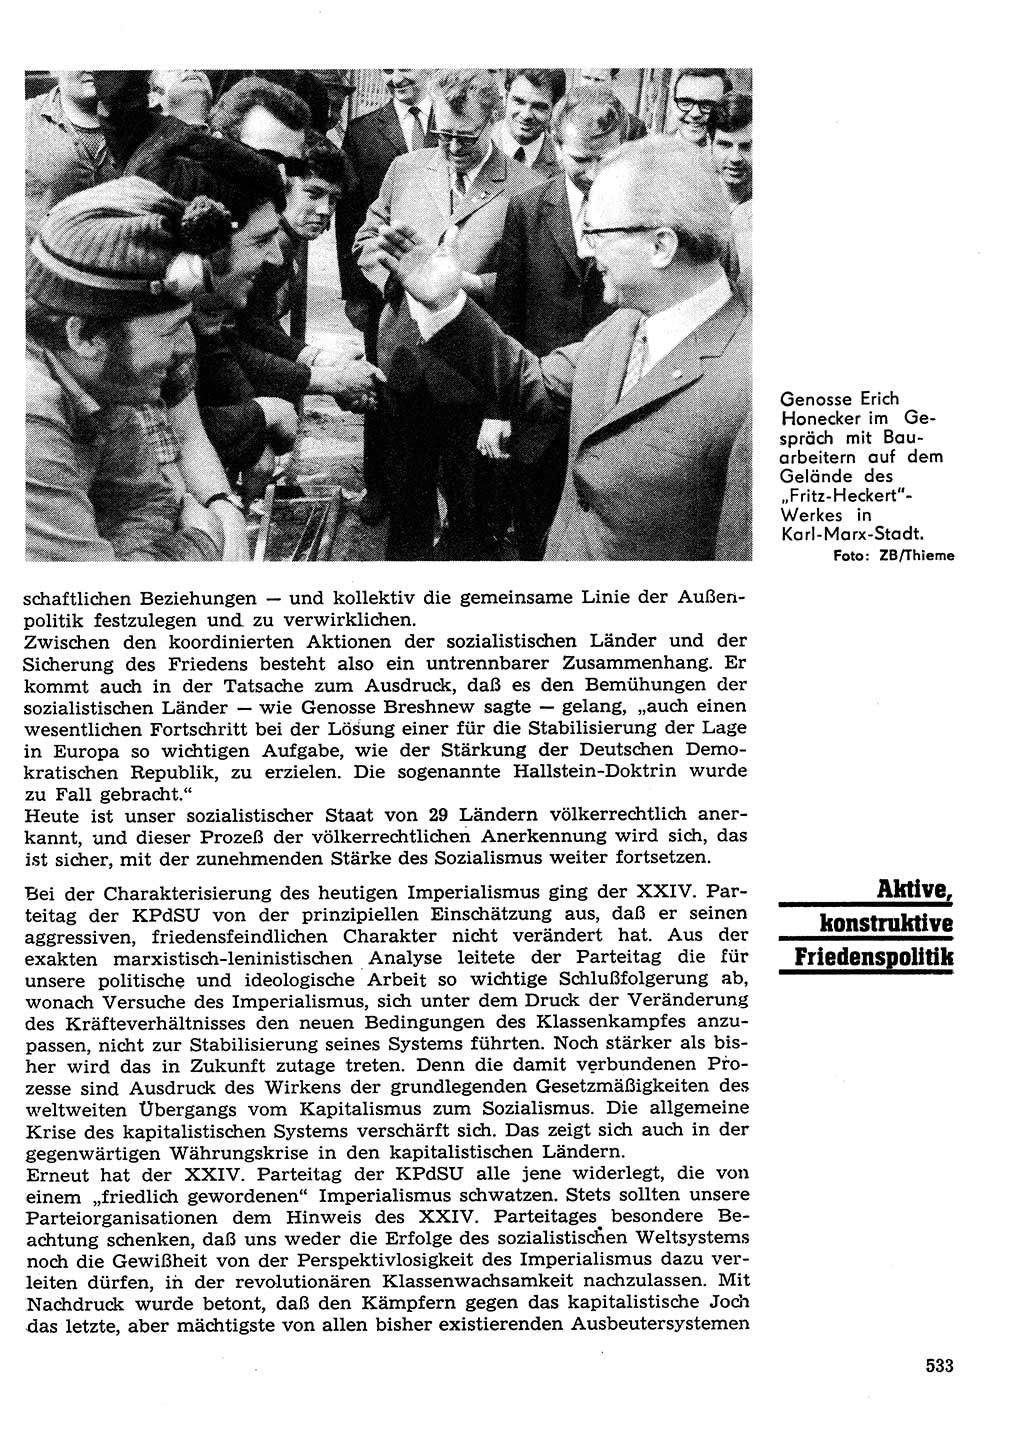 Neuer Weg (NW), Organ des Zentralkomitees (ZK) der SED (Sozialistische Einheitspartei Deutschlands) für Fragen des Parteilebens, 26. Jahrgang [Deutsche Demokratische Republik (DDR)] 1971, Seite 533 (NW ZK SED DDR 1971, S. 533)